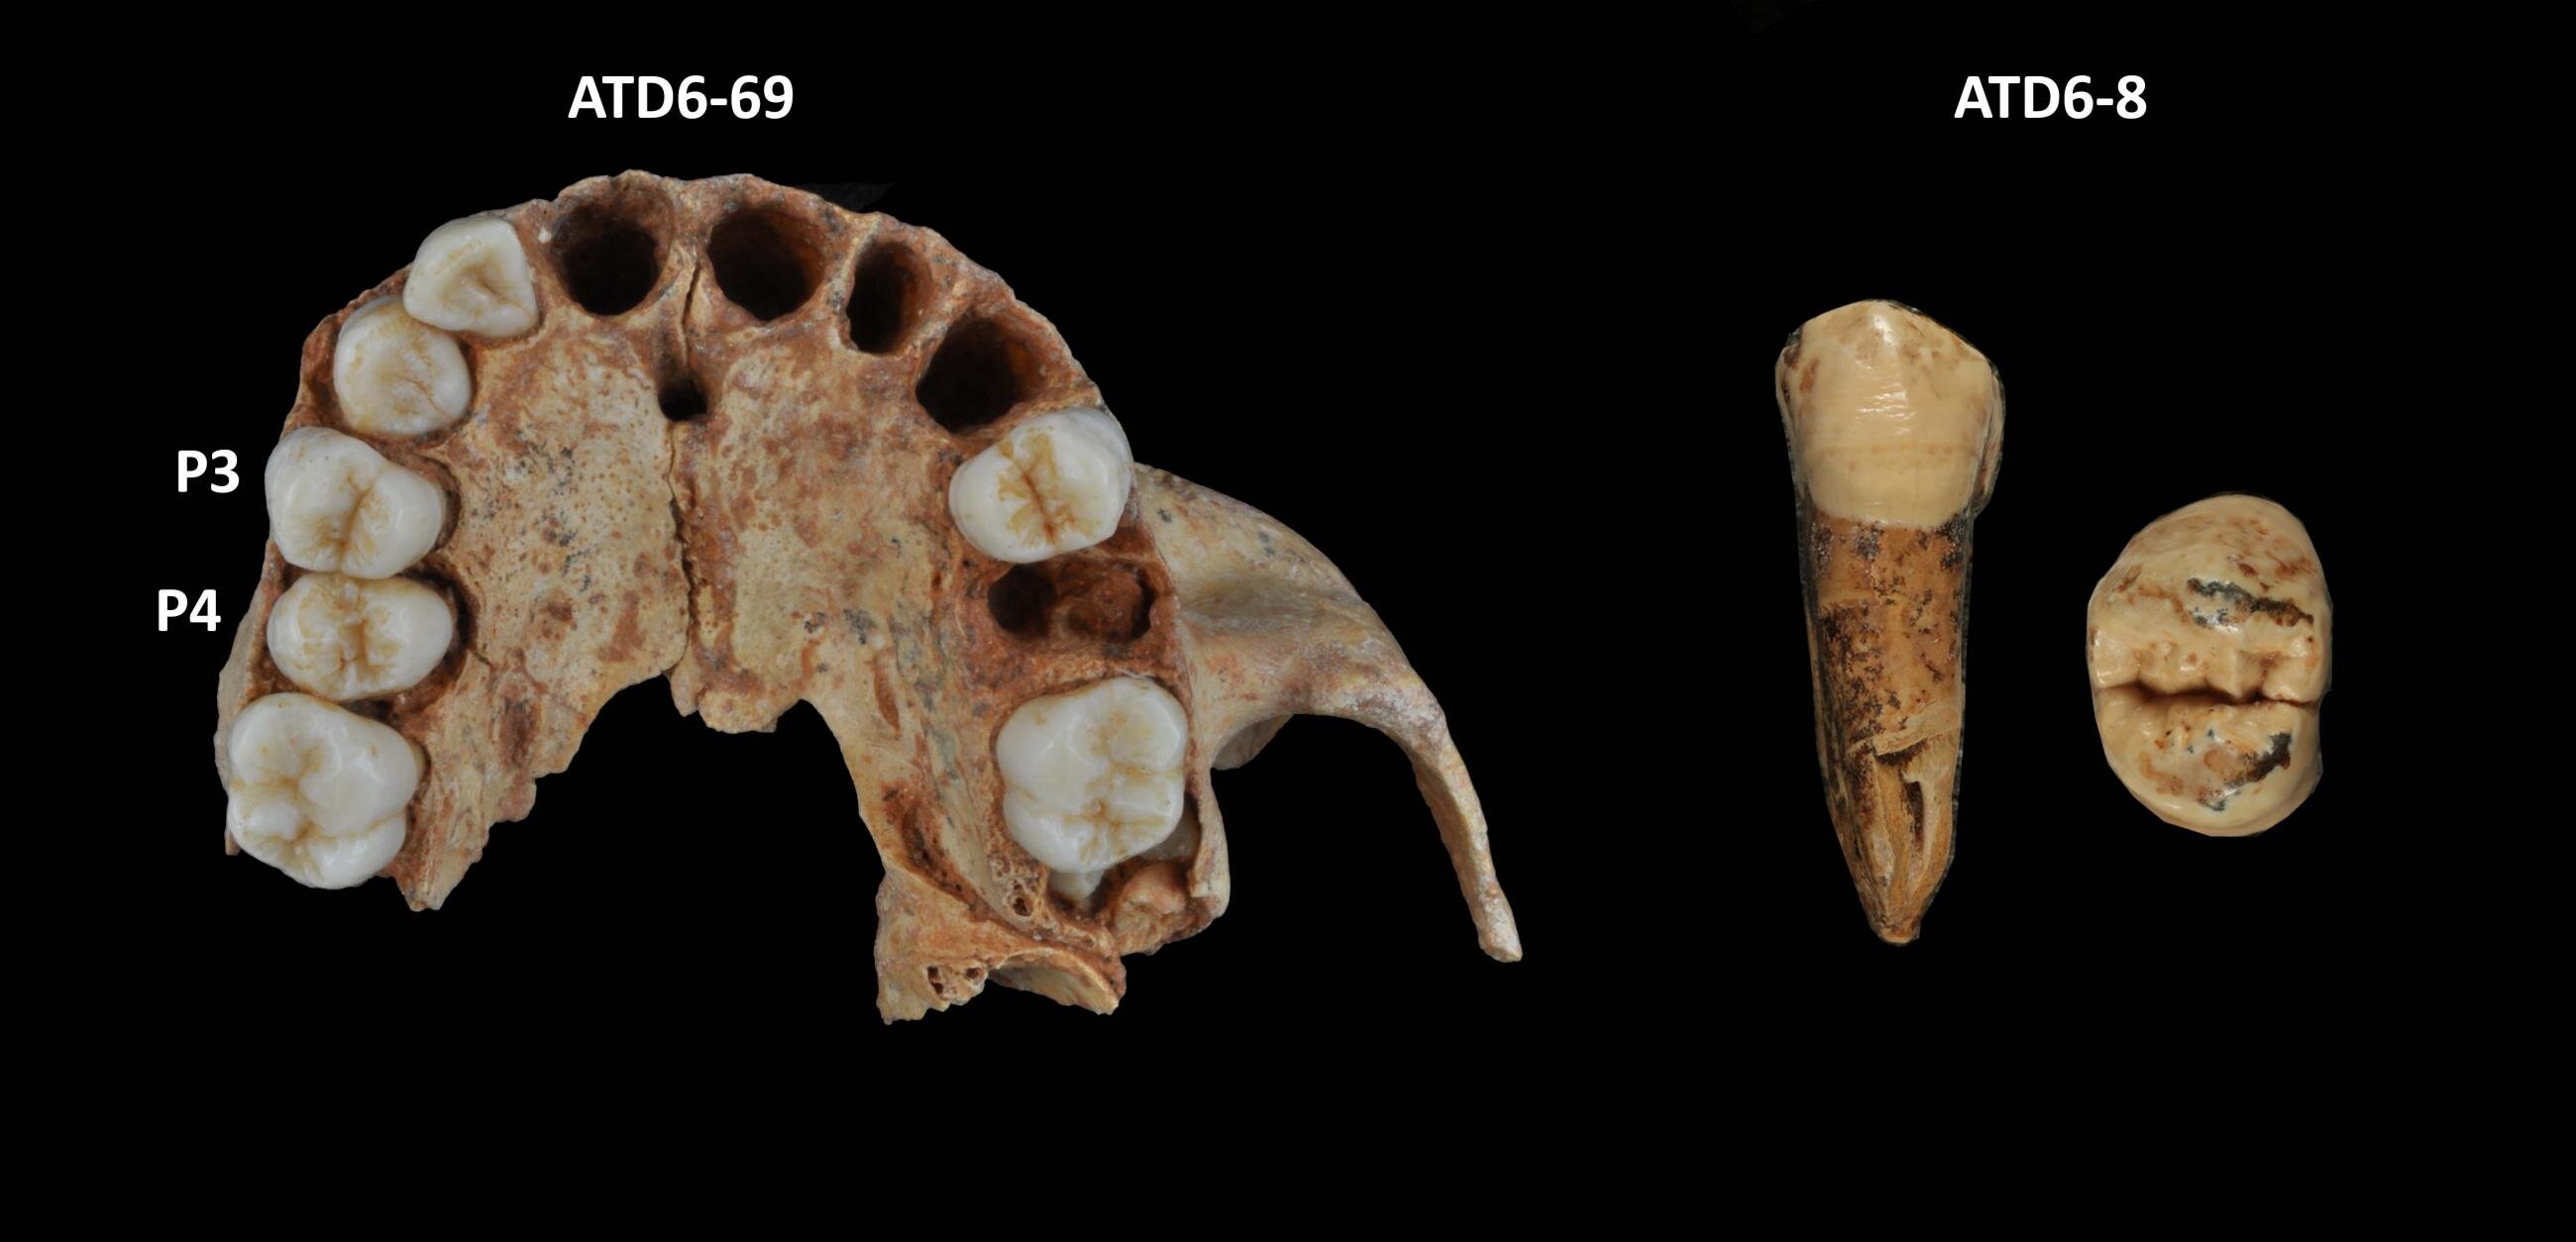 尼安德特人并不是唯一一个牙齿以拥有薄牙釉质为特征的物种